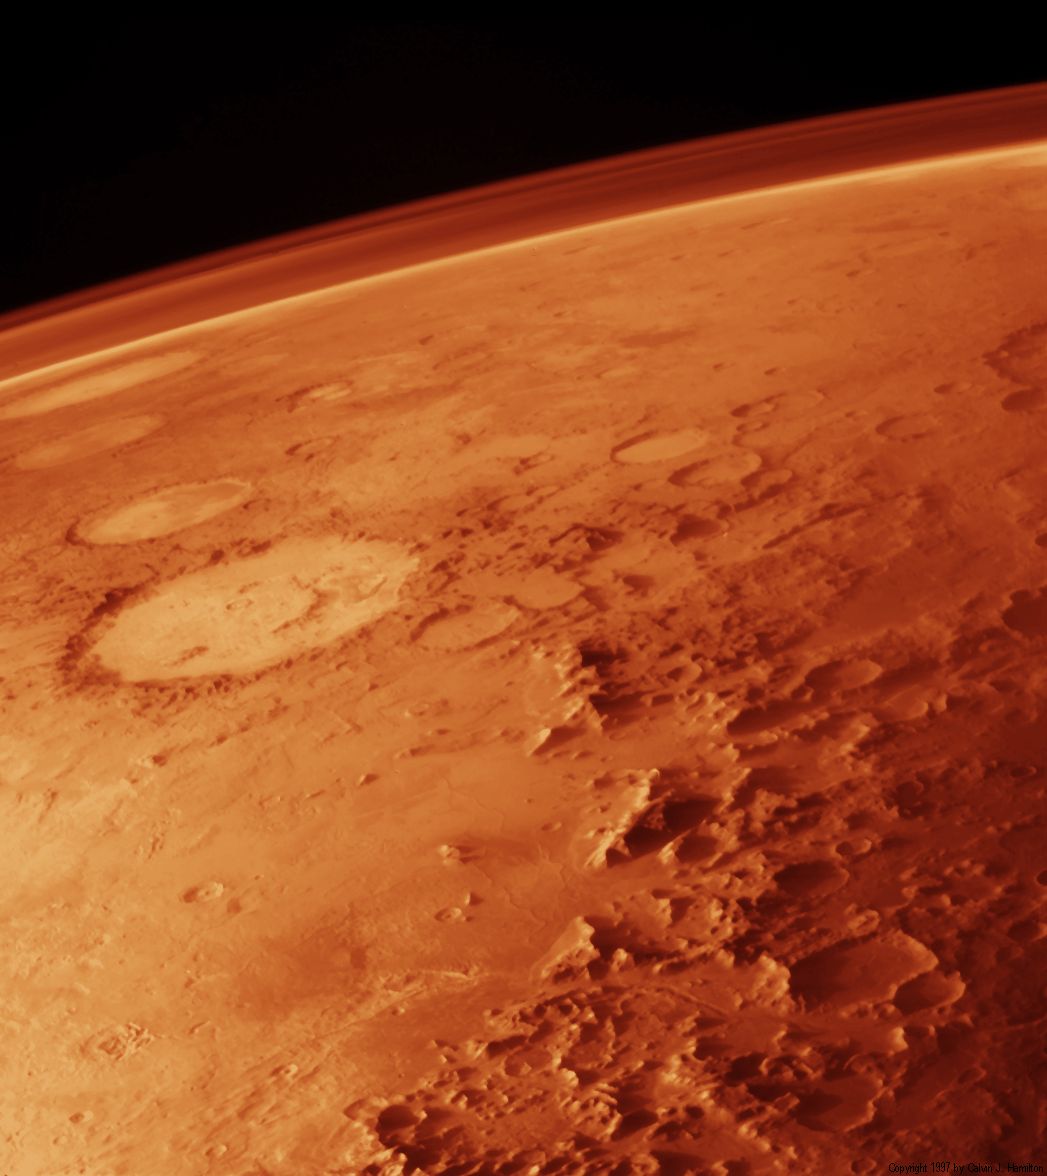 Mars_atmosphere